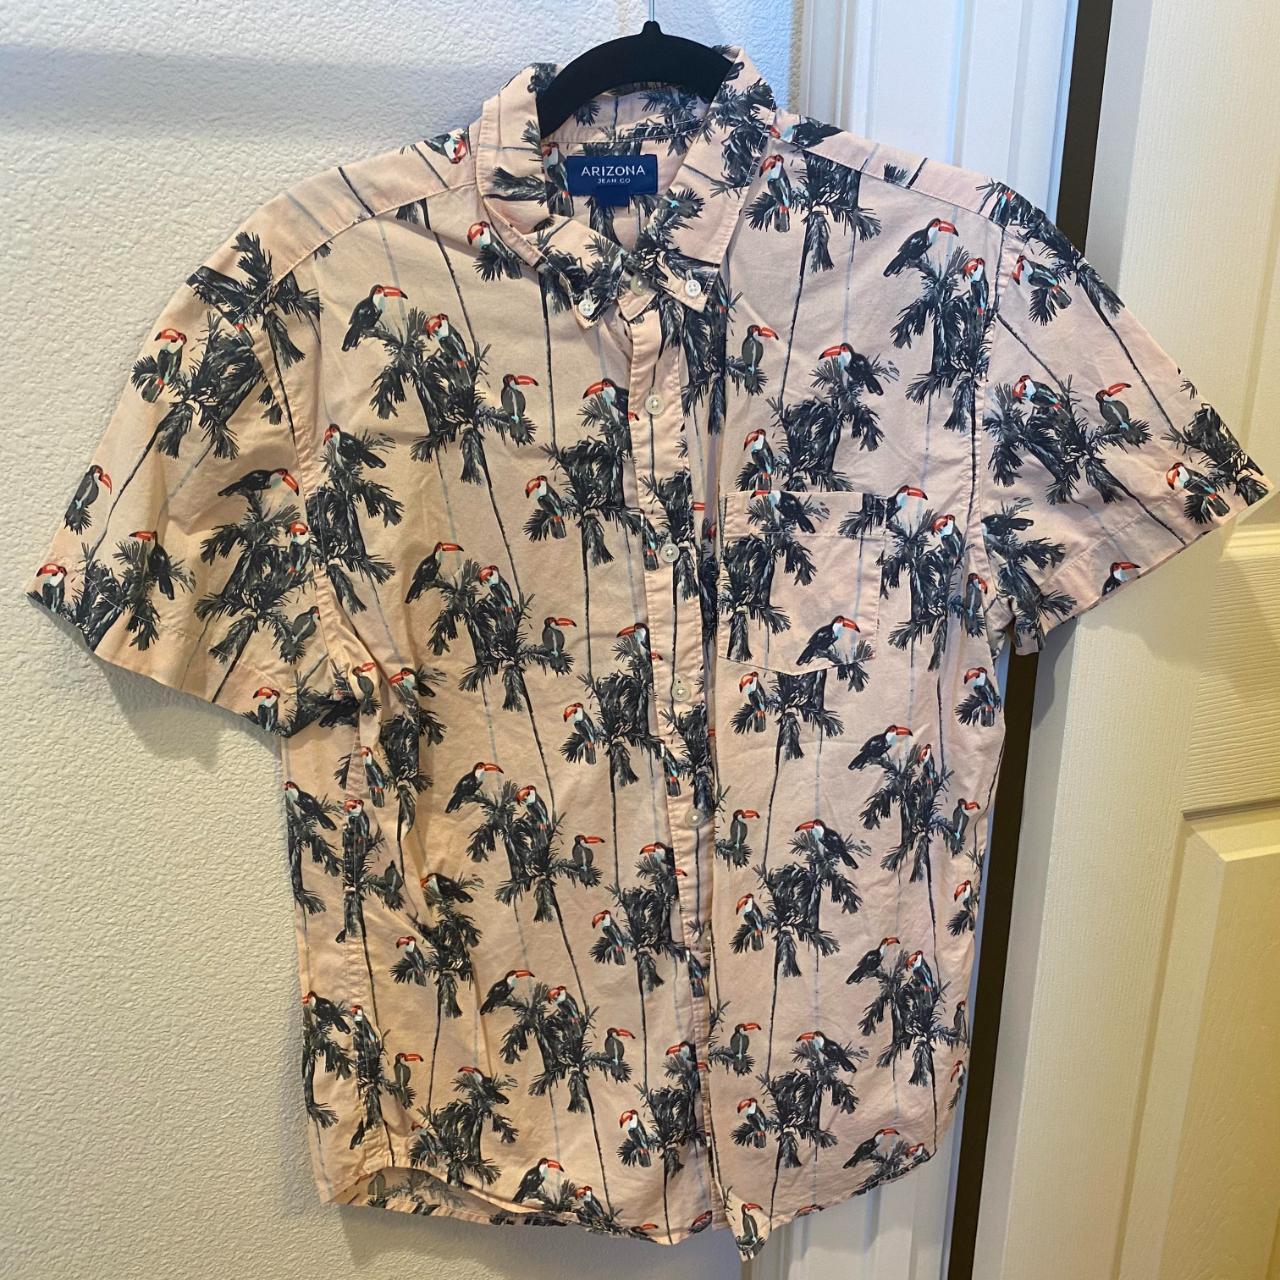 Toucan Novelty Buttoned Down Shirt Size Medium - Depop